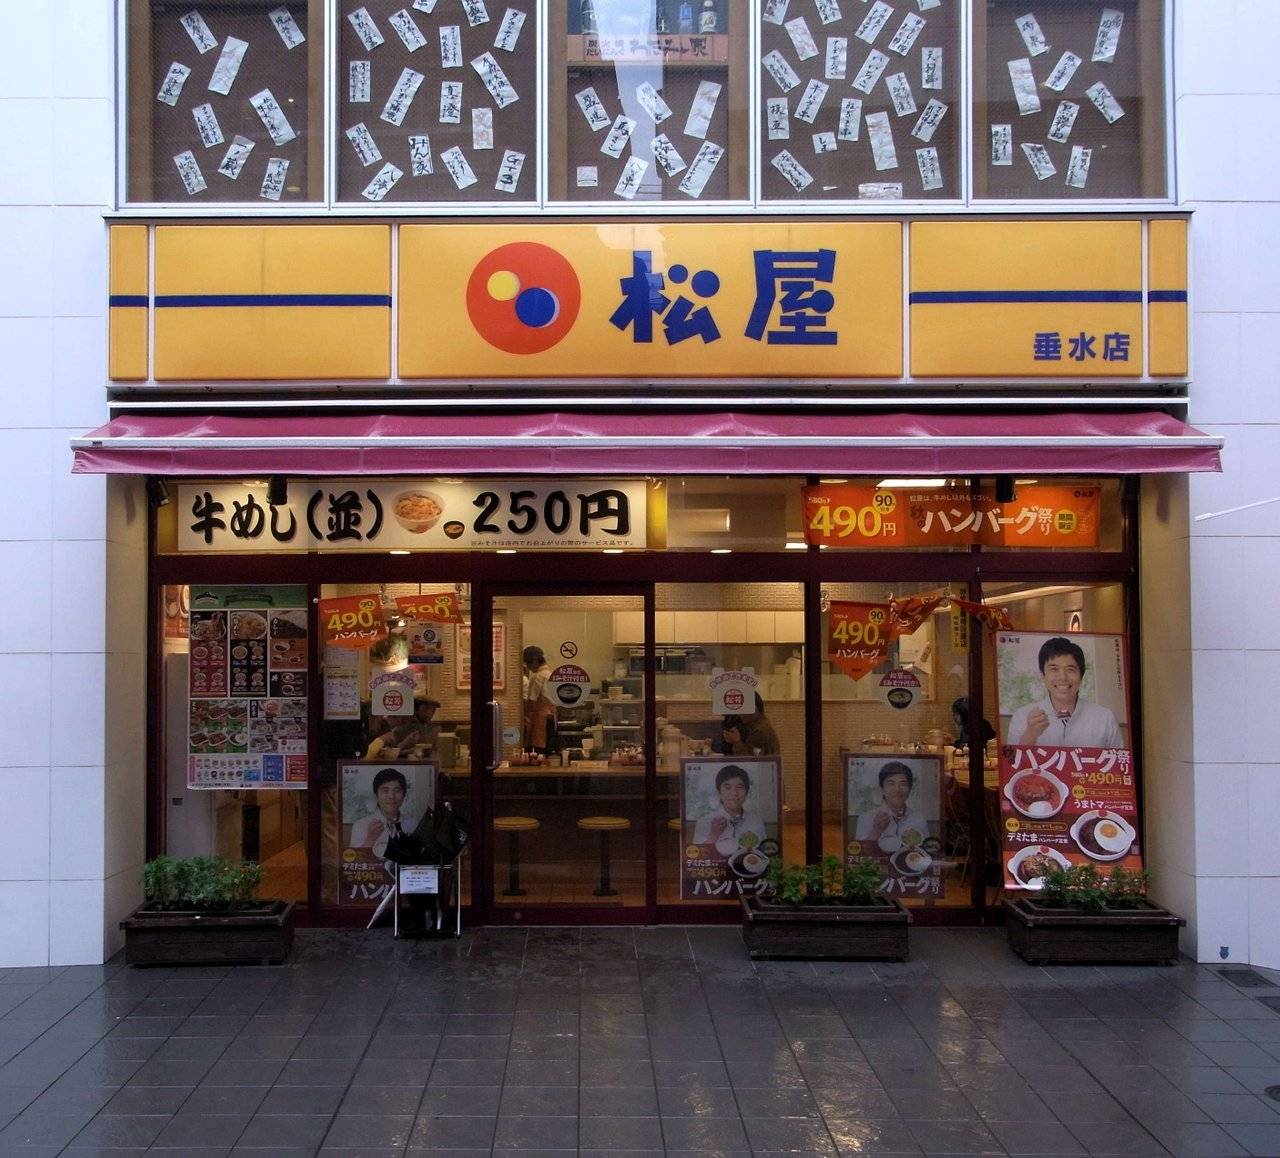 Matsuya_Gyūdon_restaurant,_Akashi,_Japan.jpg